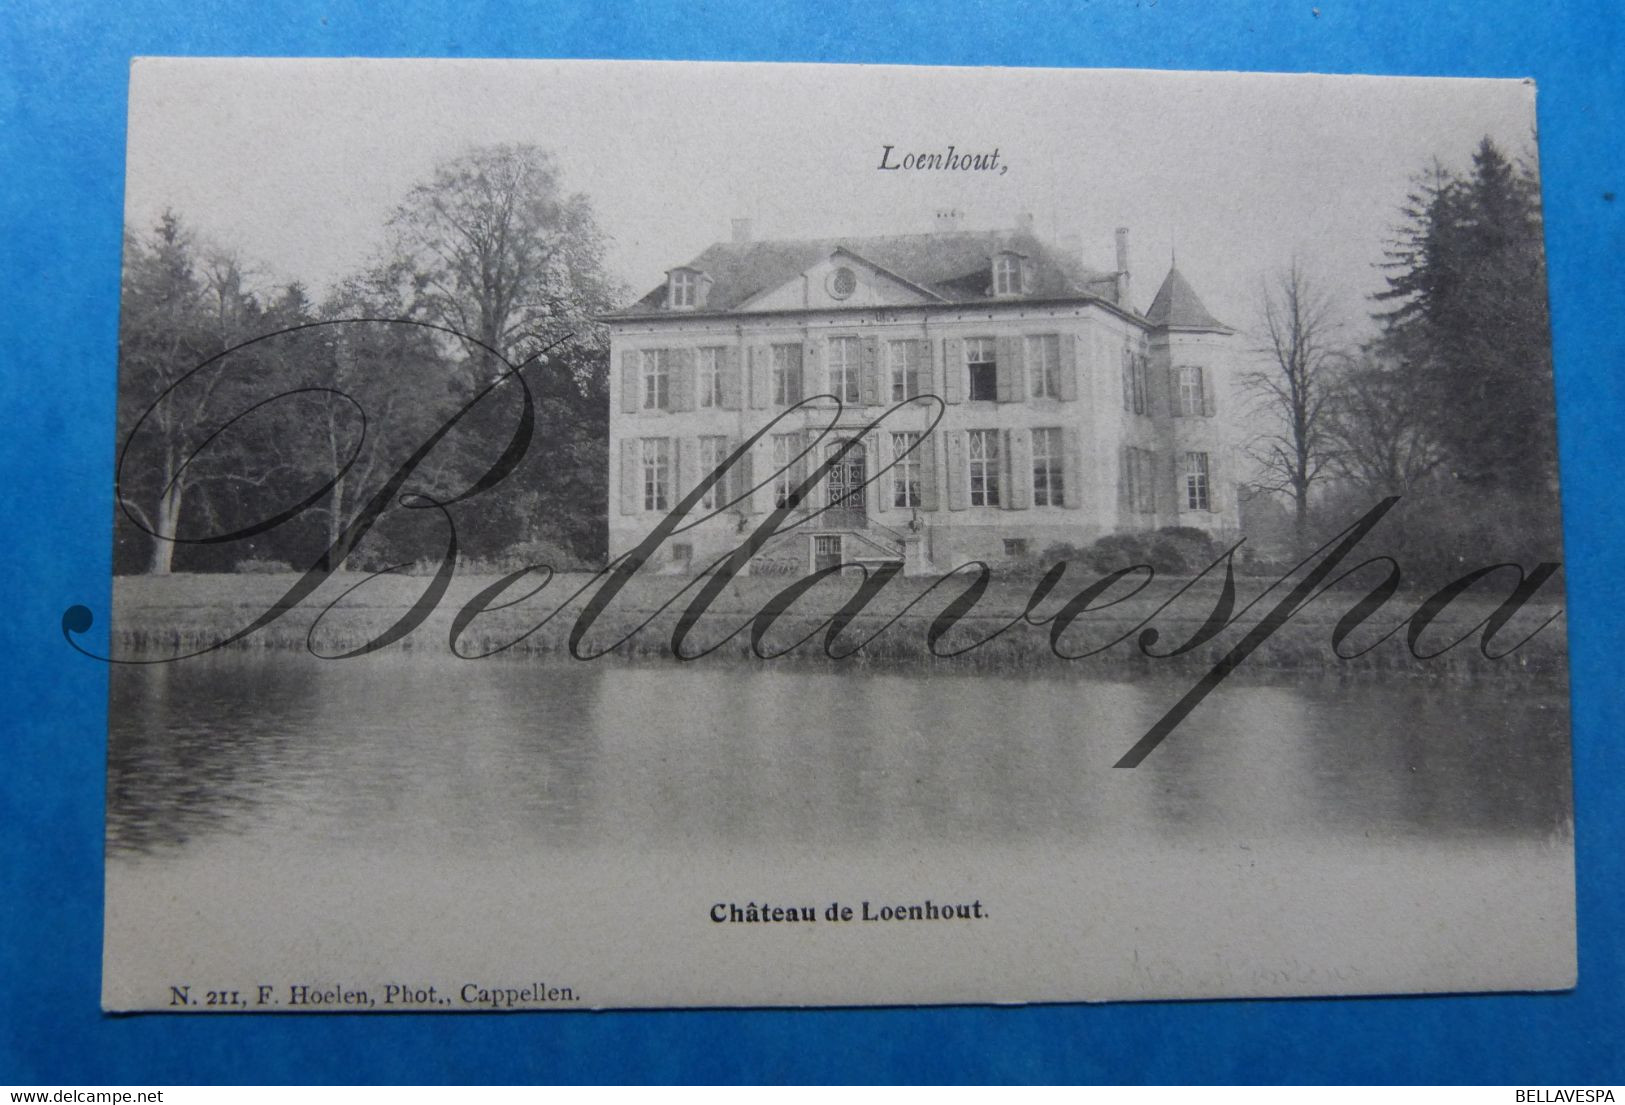 Loenhout Chateau Kasteel F. Hoelen N° 211 Capellen - Temse